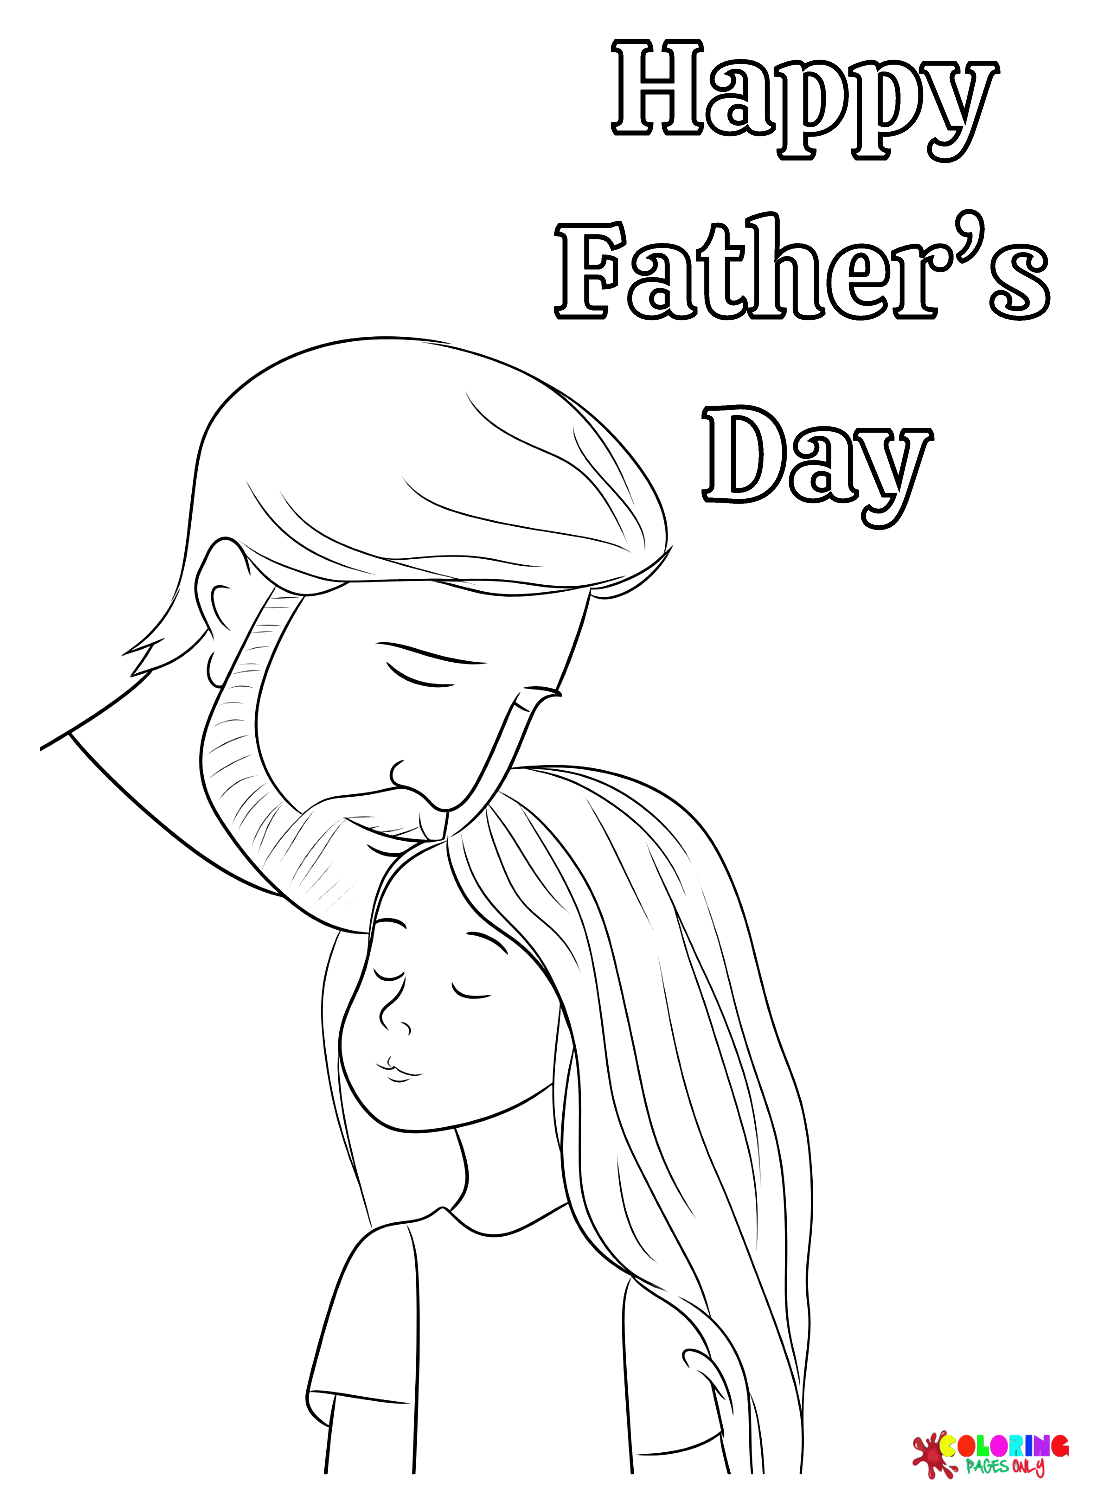 Padre con hija del día del padre.